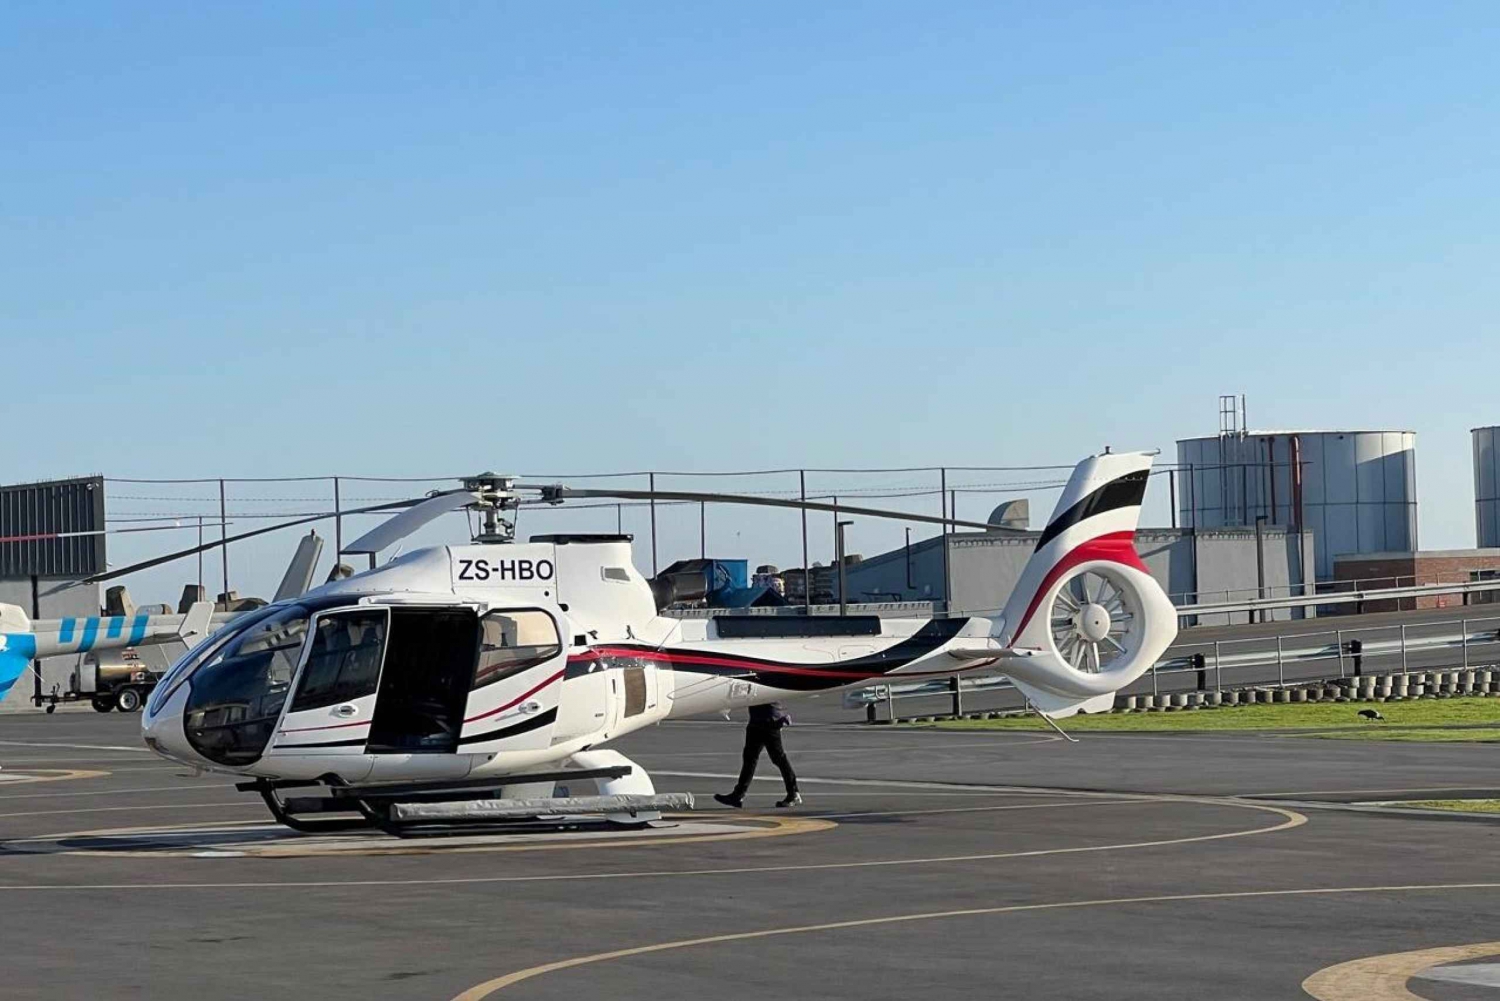 36-minutowa wycieczka helikopterem po regionie winiarskim Stellenbosch